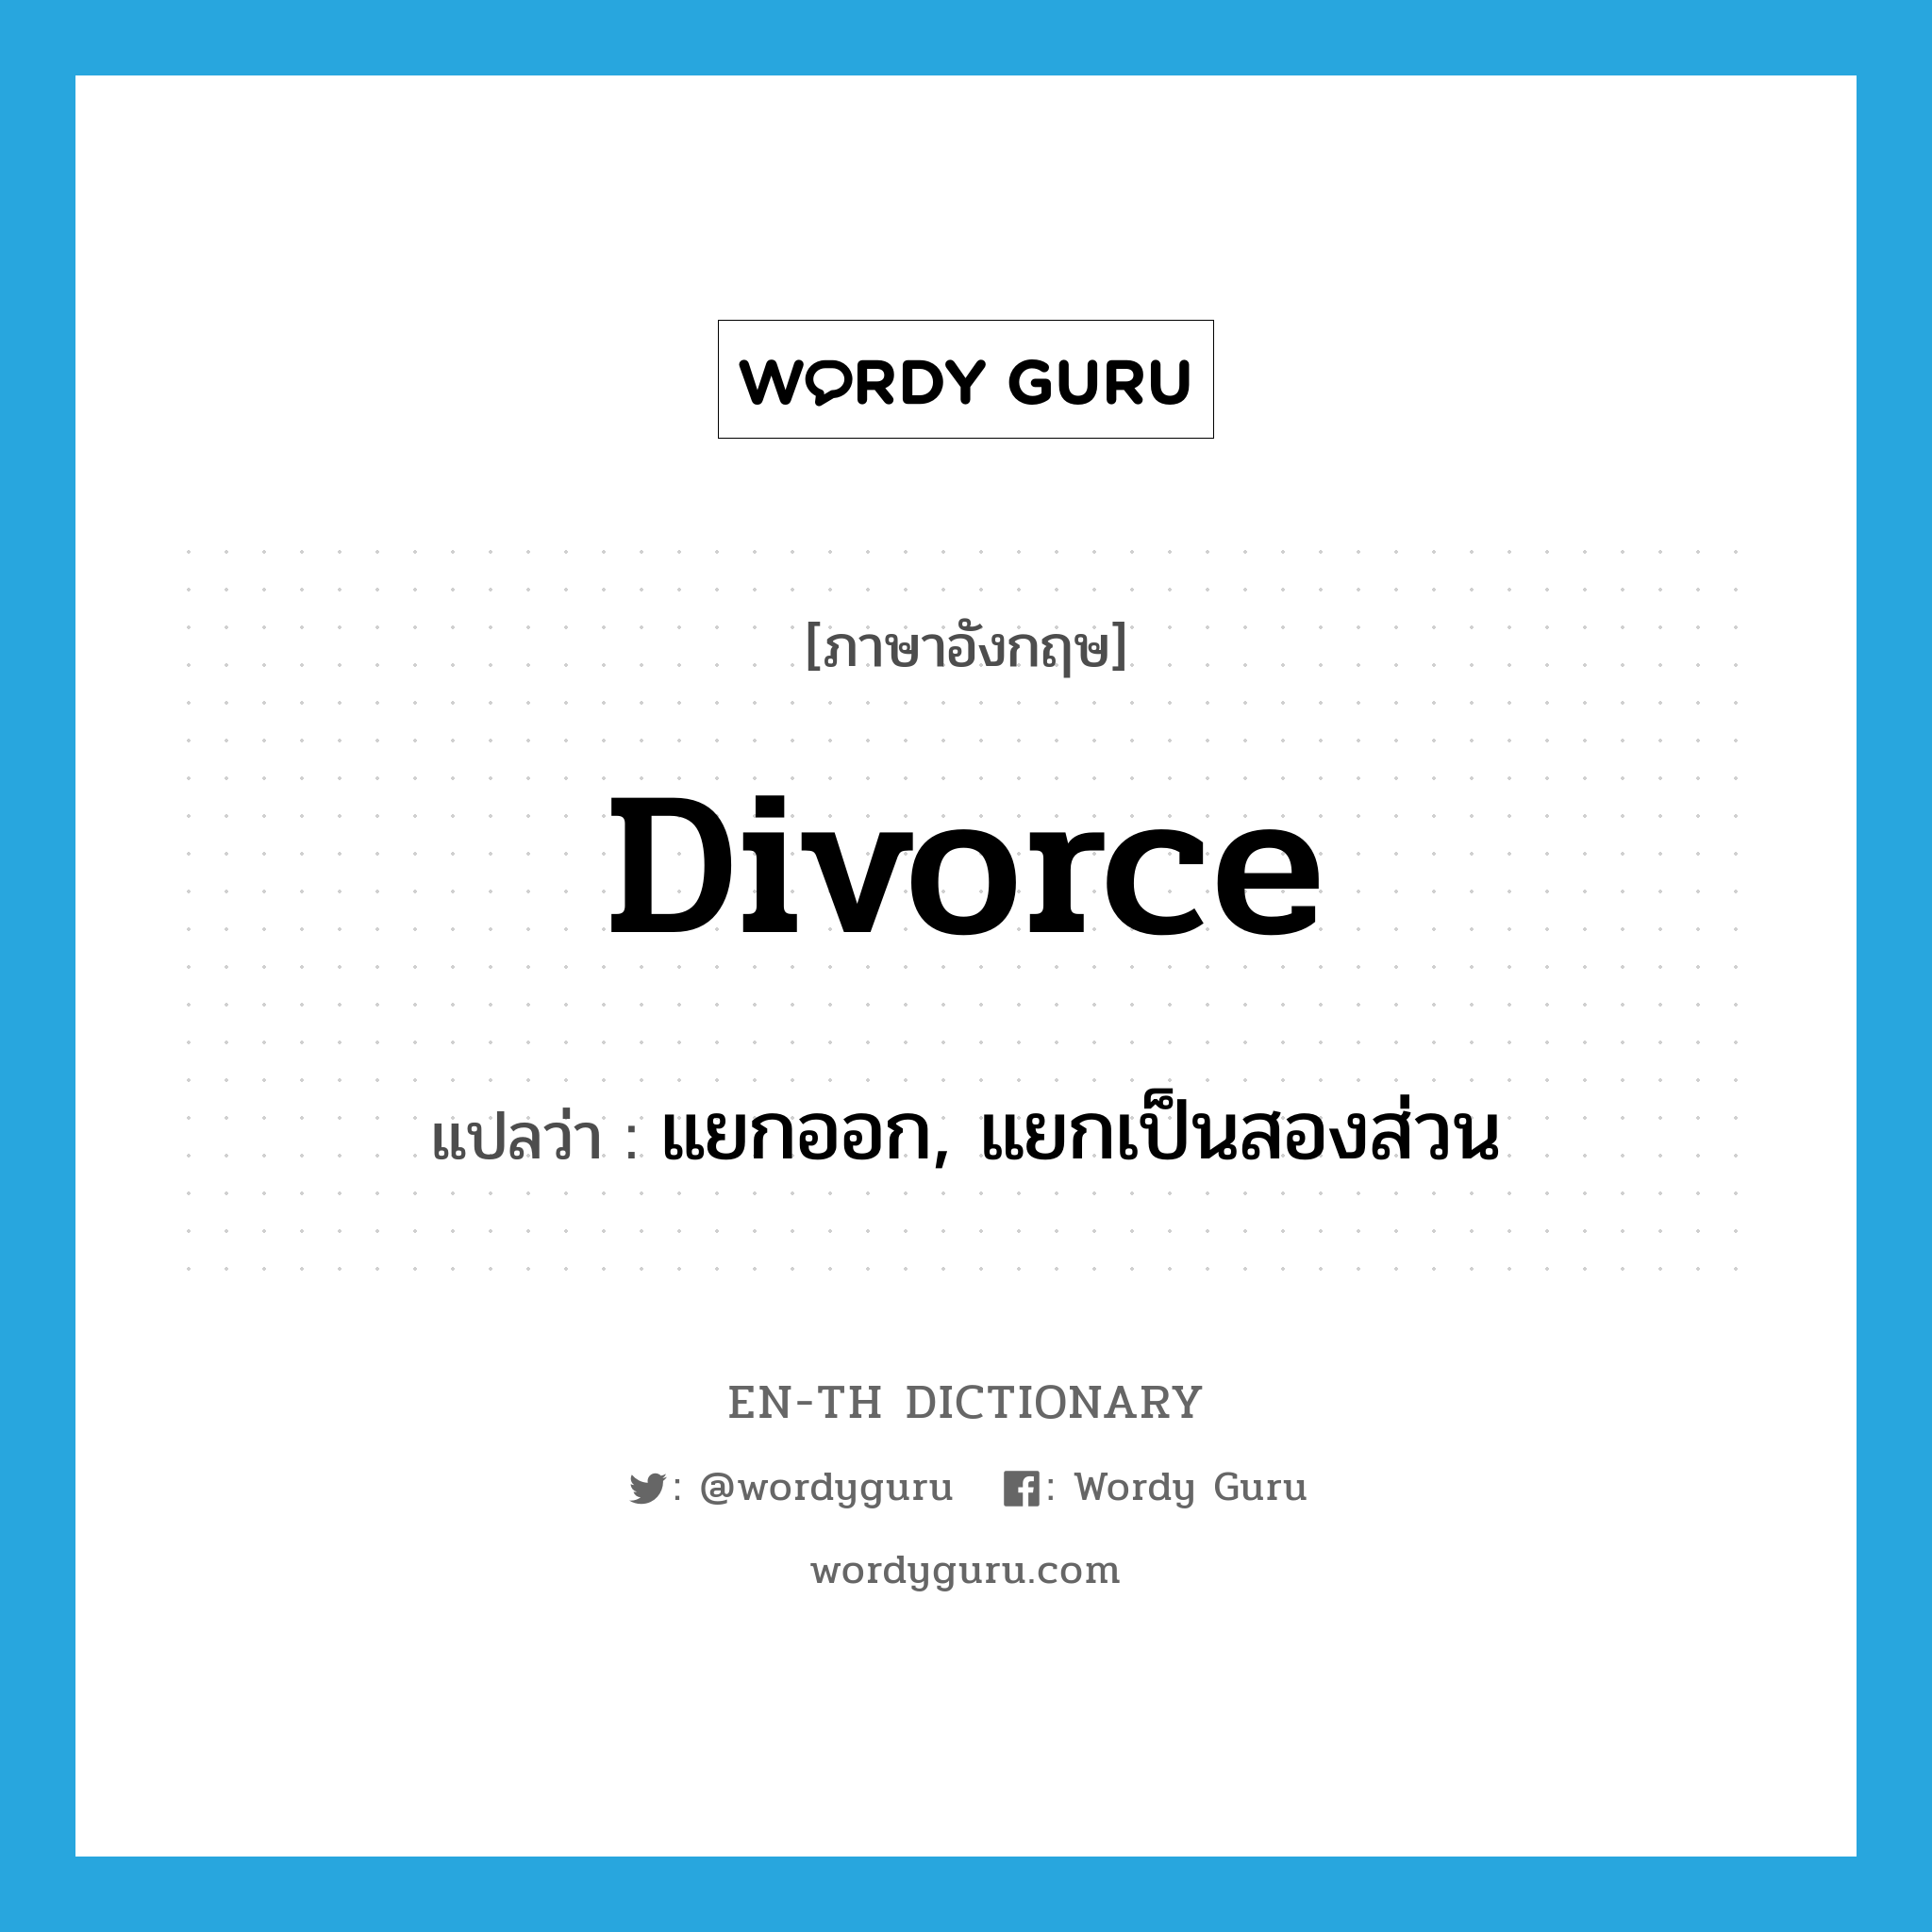 แยกออก, แยกเป็นสองส่วน ภาษาอังกฤษ?, คำศัพท์ภาษาอังกฤษ แยกออก, แยกเป็นสองส่วน แปลว่า divorce ประเภท VT หมวด VT